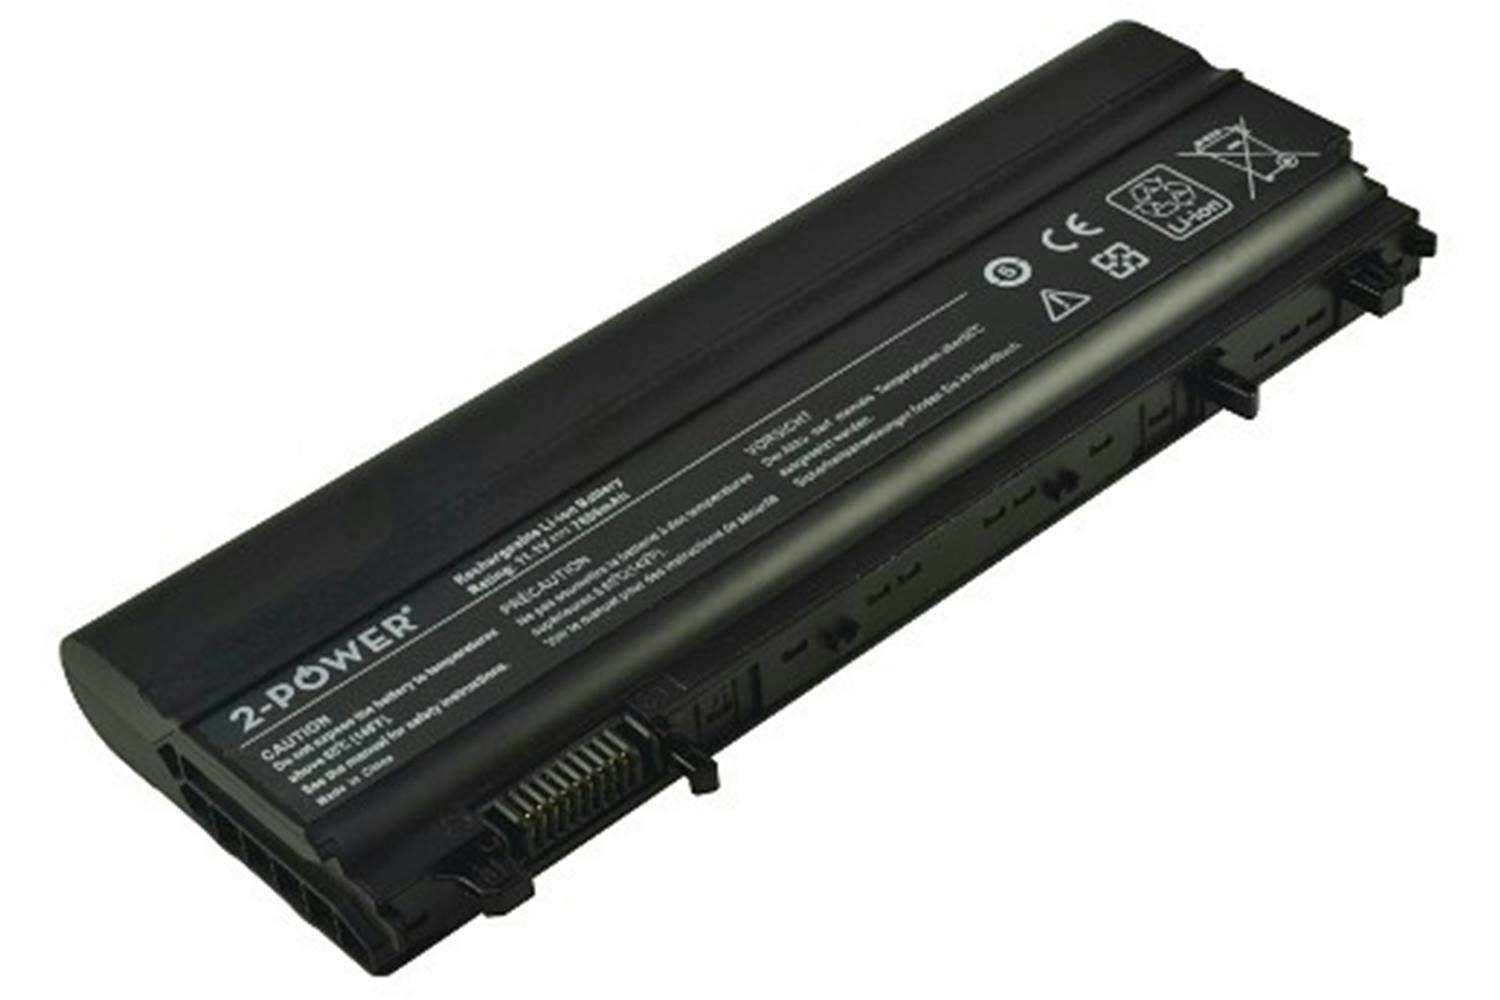 2-Power Main Battery Pack 11.1V 7800mAh